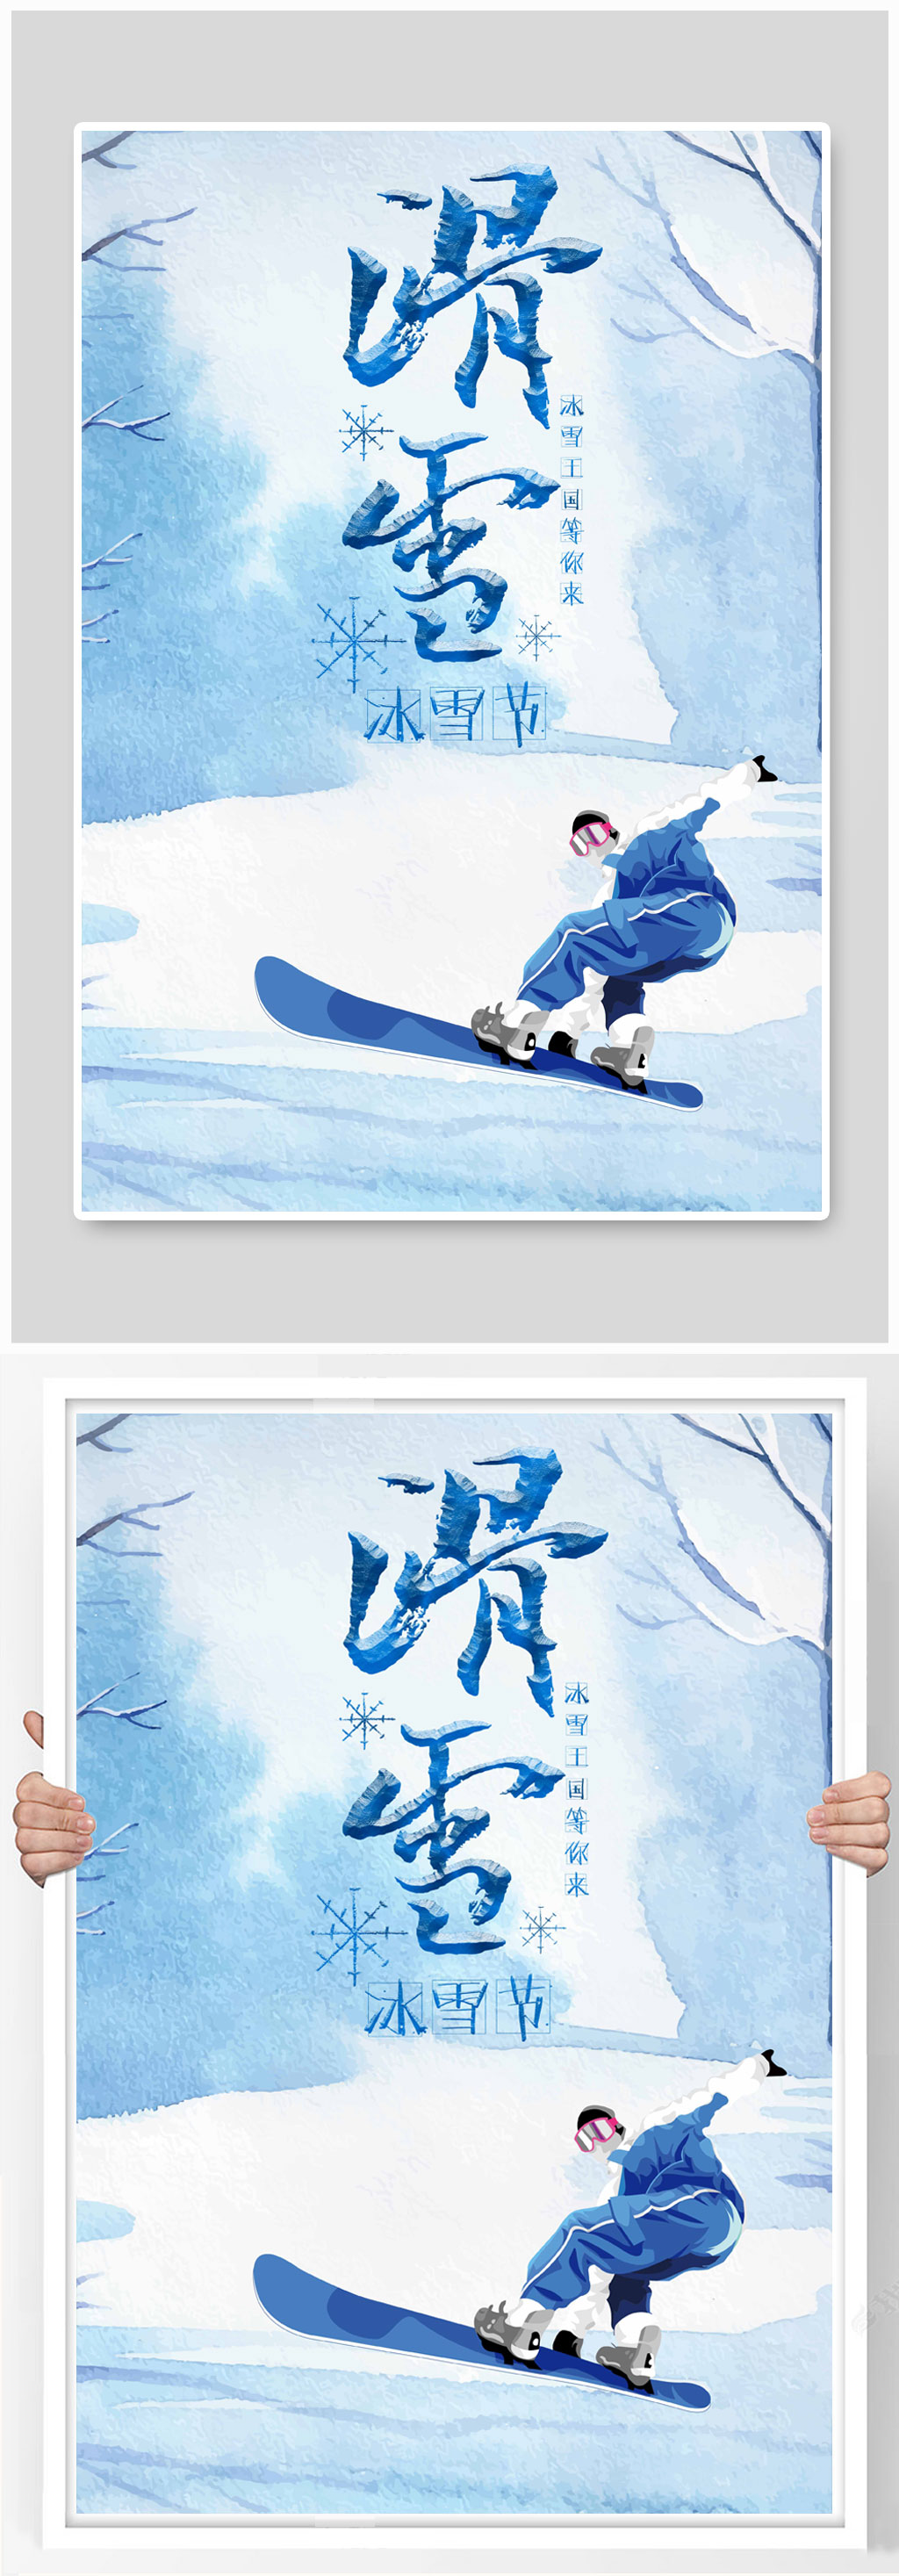 滑雪运动冬季滑雪海报